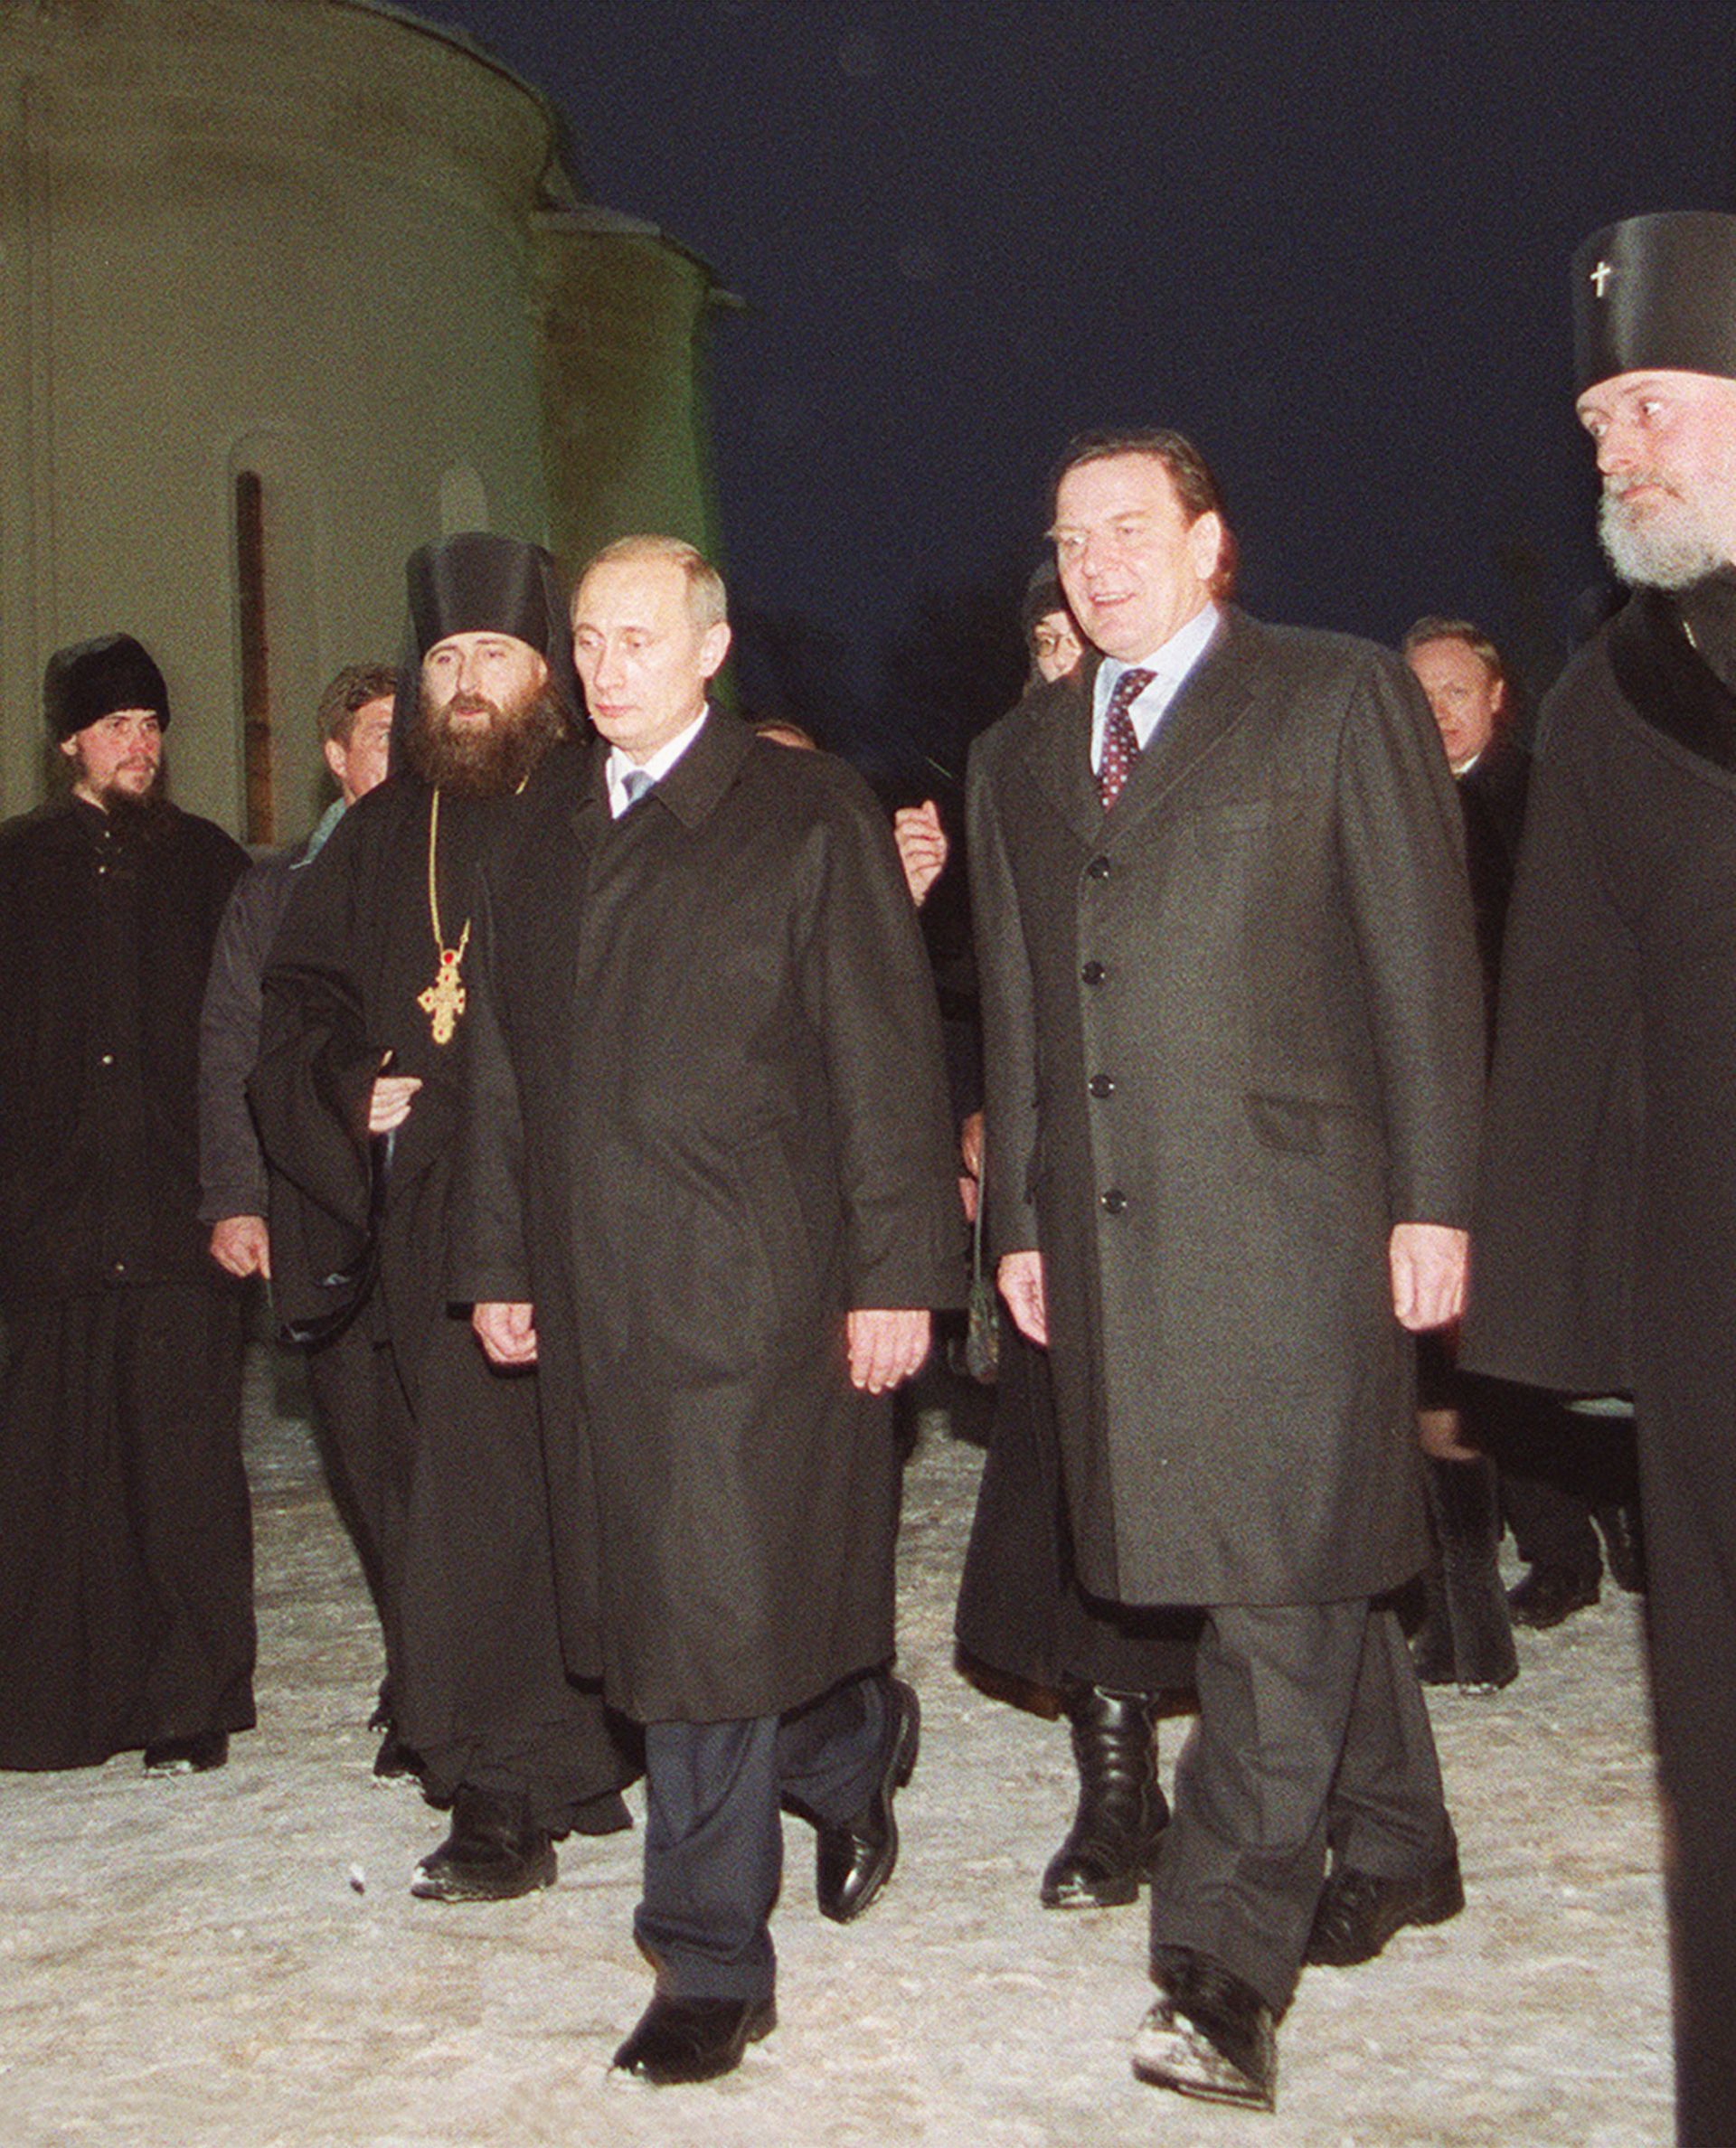 7 януари 2001 г. - Руският президент Владимир Путин и германският канцлер Герхард Шрьодер посещават руски православен манастир от 14 век в Сергиев Посад, на 70 км северно от Москва.